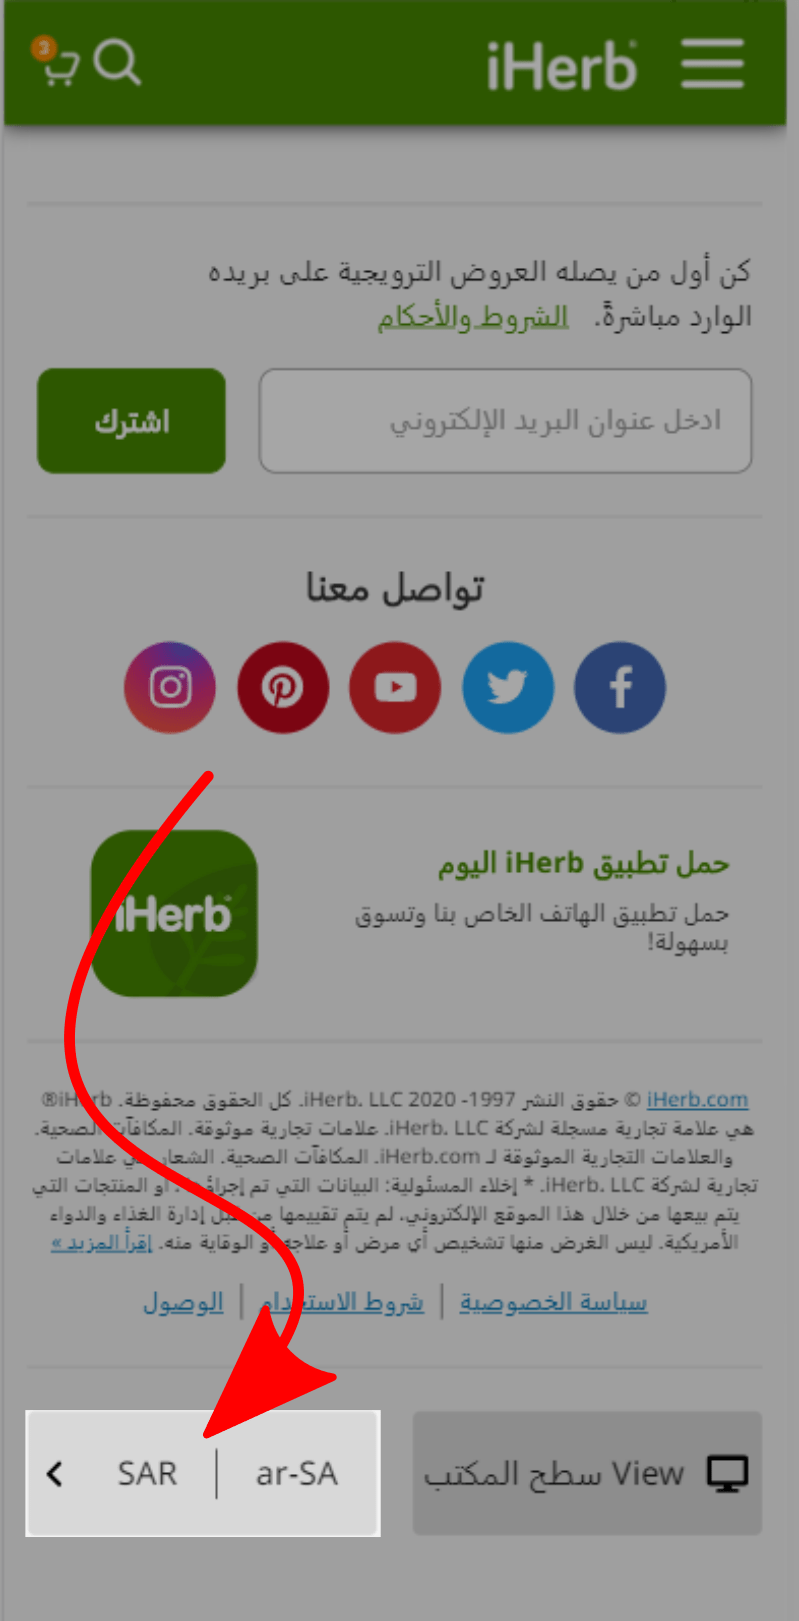 تعديل موقع اي هيرب ليكون بالعربي في قطر